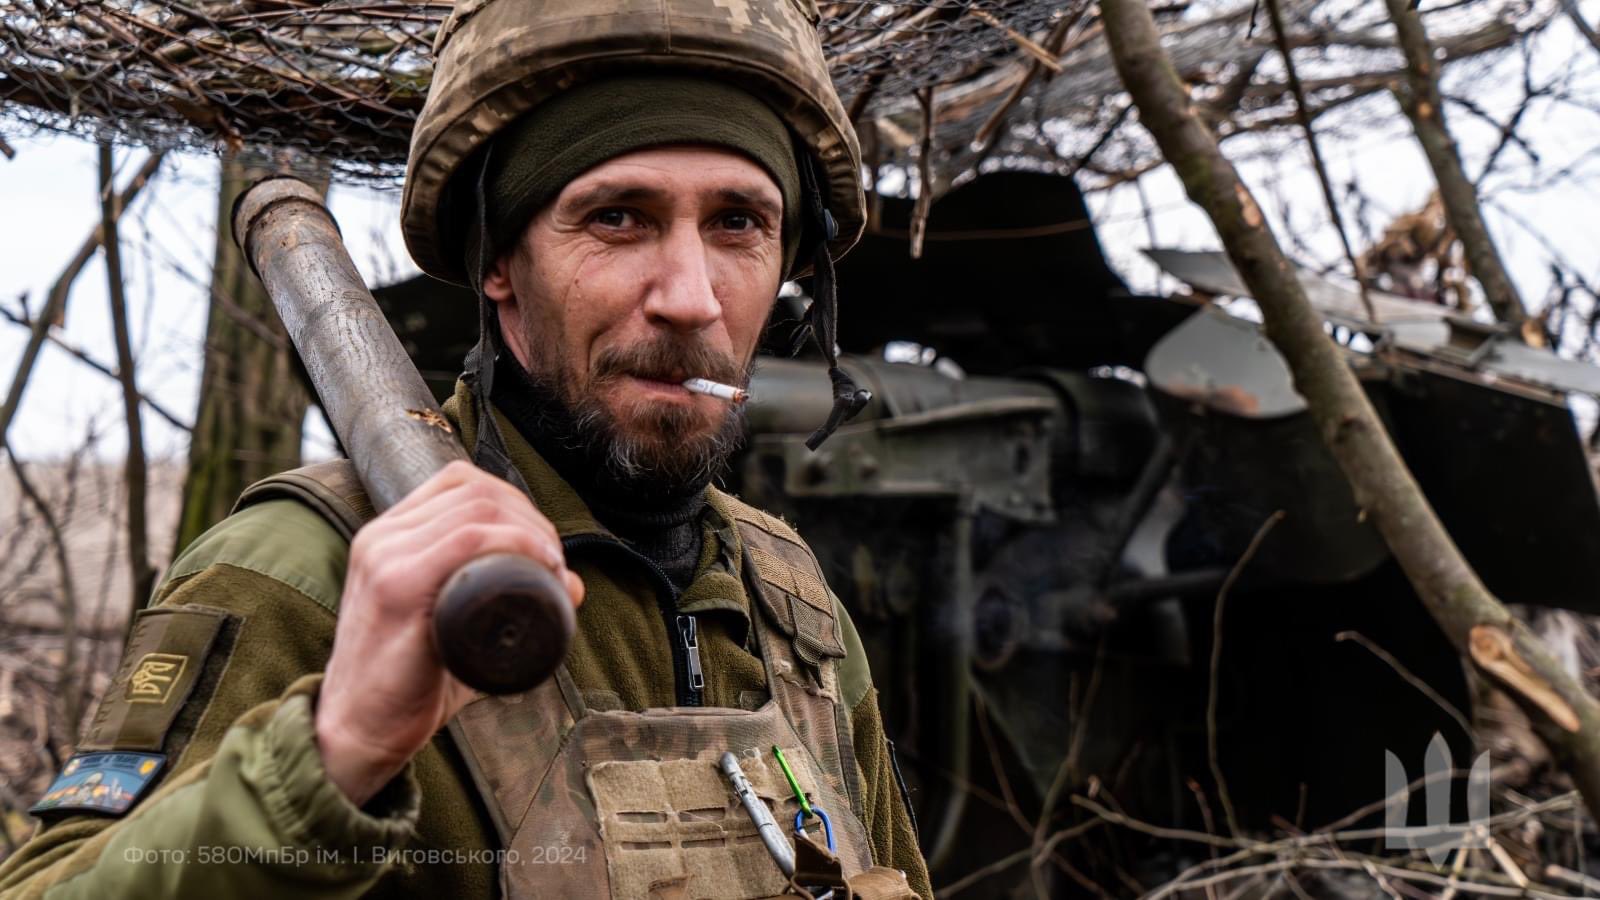 صور الجيش الاوكراني في الحرب الروسية-الاوكرانية.........متجدد GKYk2XnWIAAleW8?format=jpg&name=large